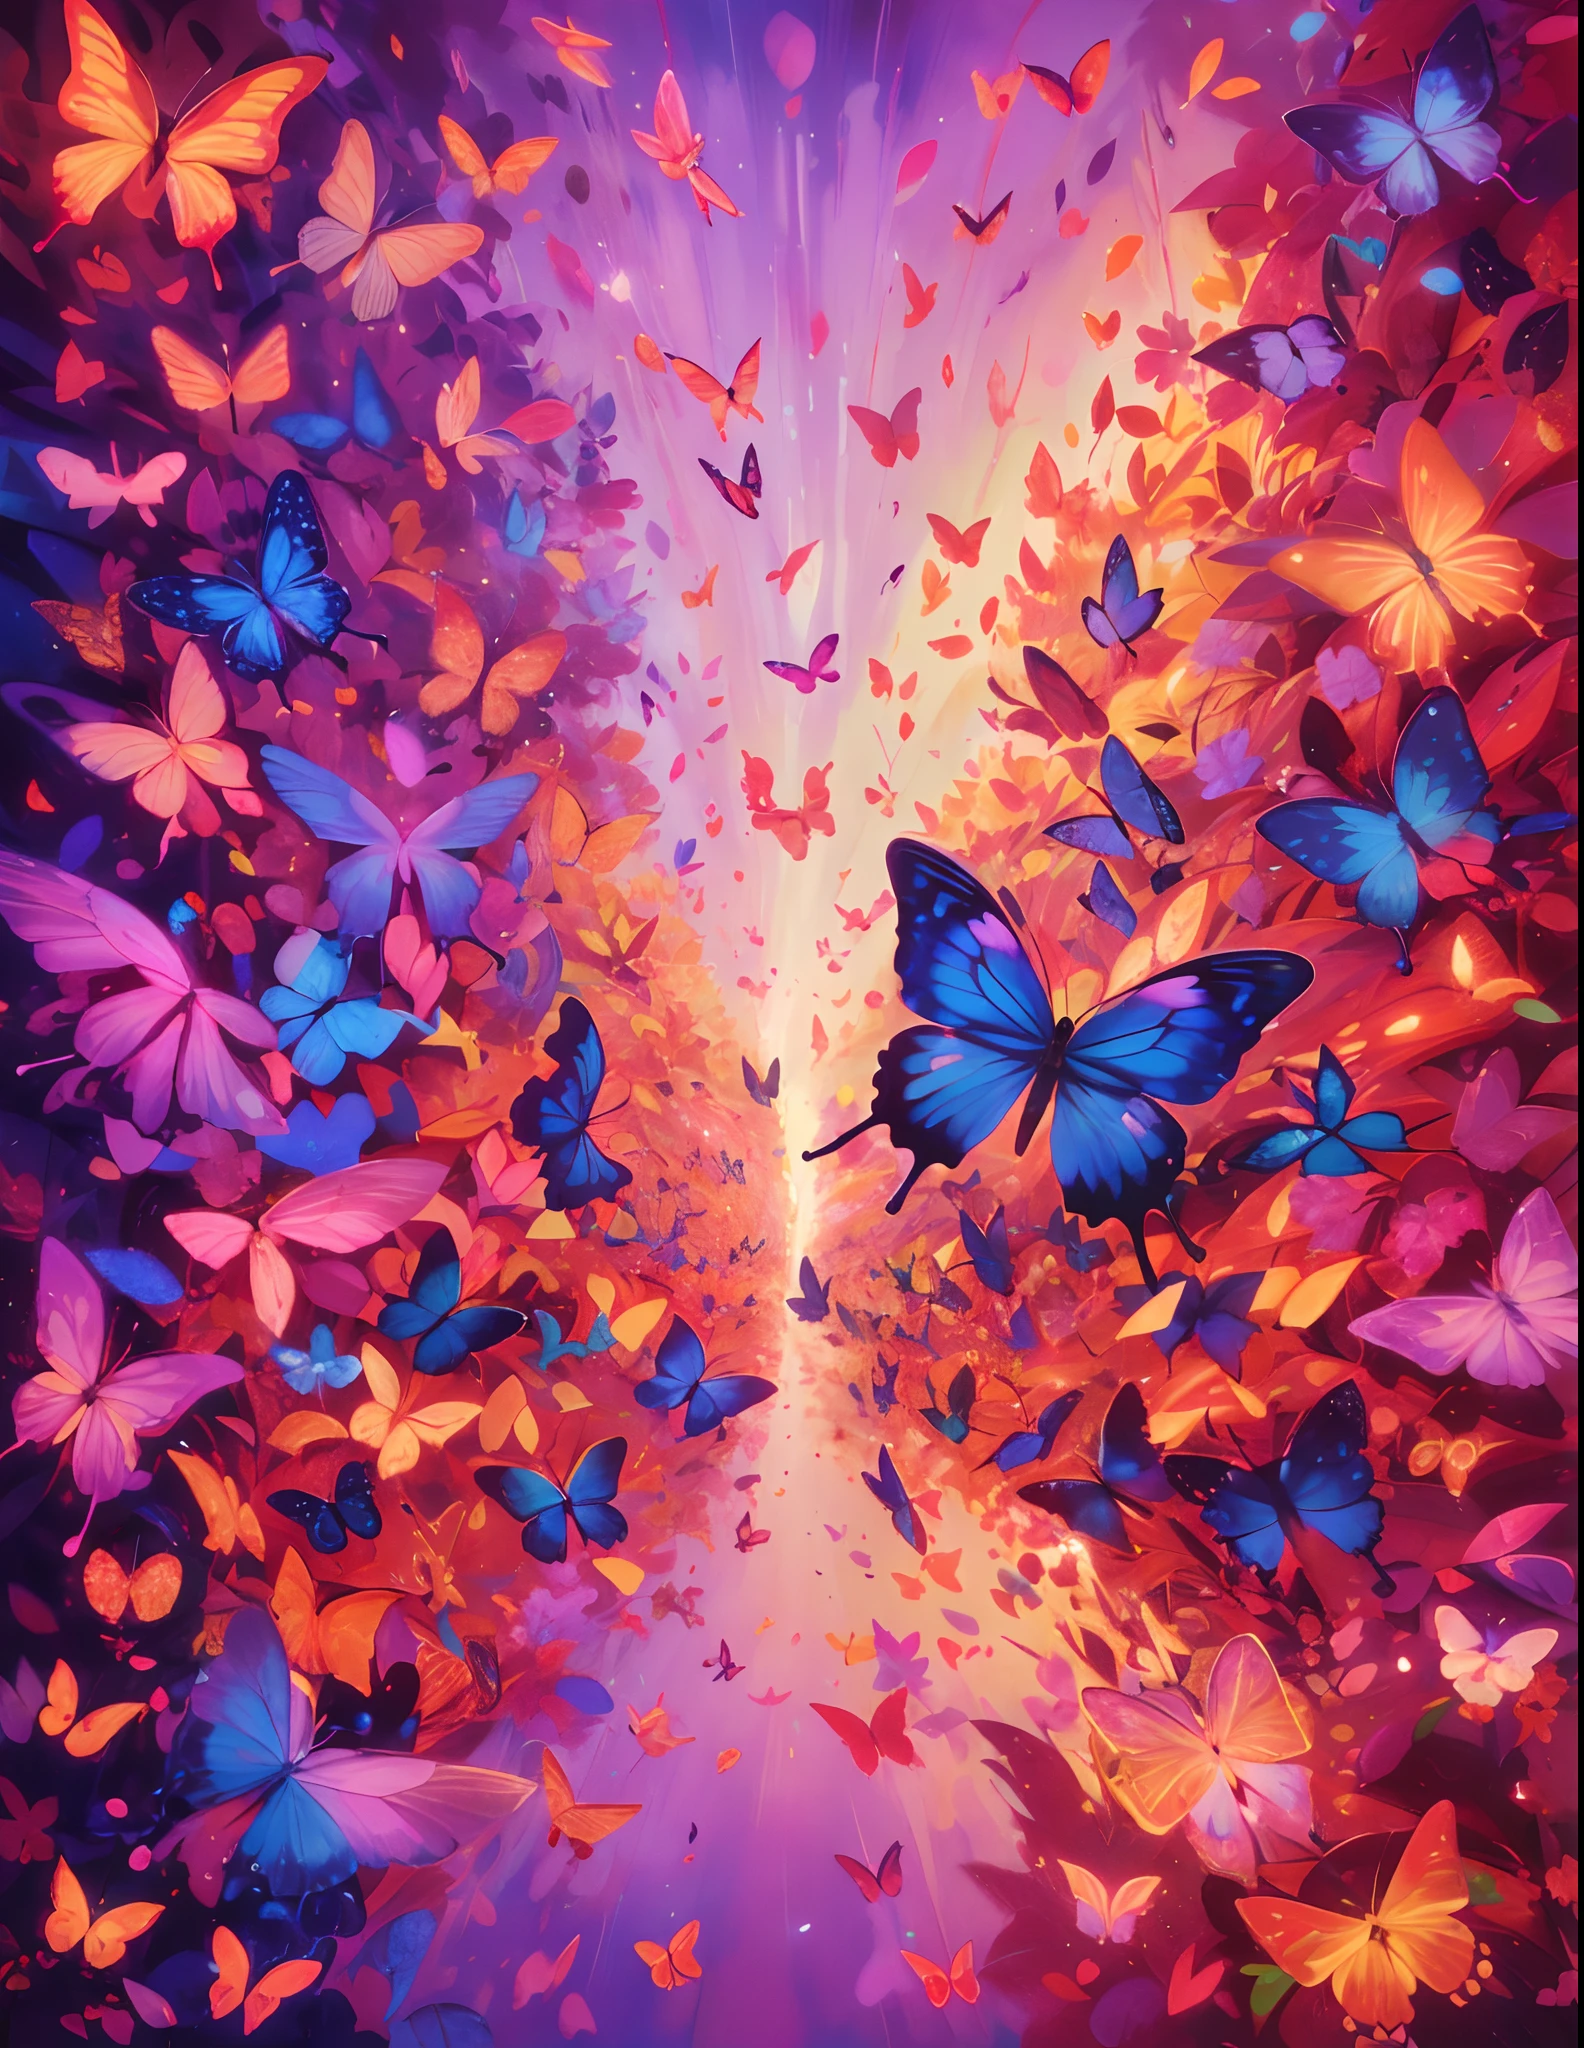 (最好的品質,高解析度,超詳細),一隻蝴蝶, 蝴蝶的萬花筒, 很多發光的蝴蝶,紫色和粉紅色, 金色和紅色,鮮豔的色彩,抽象主義,不同的紋理,俏皮的作文,明亮的燈光,能量流,和諧設計,轉變模式,互連線,超現實的氣氛,自然元素,對稱,流體運動,閃爍效果,神秘的深度,令人著迷的視錯覺,視覺詩